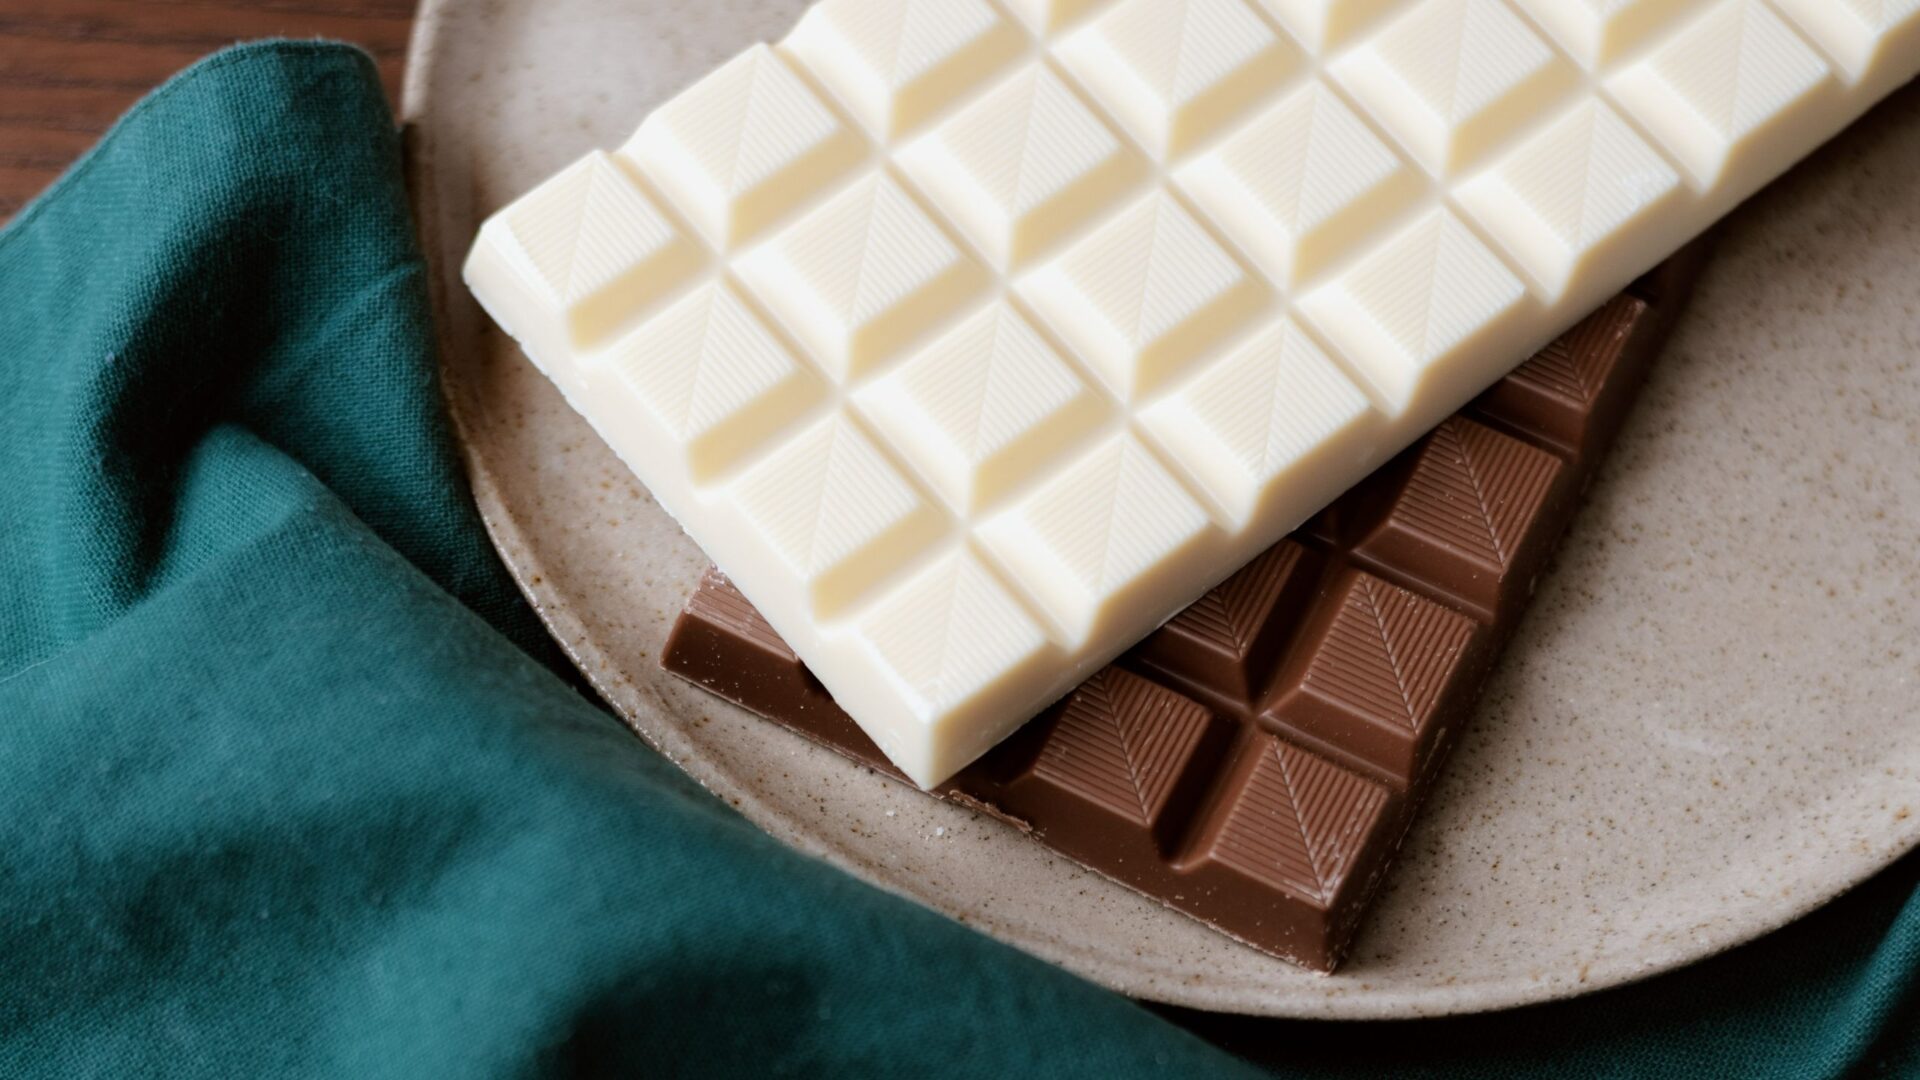 De 5 geheimen van witte chocolade